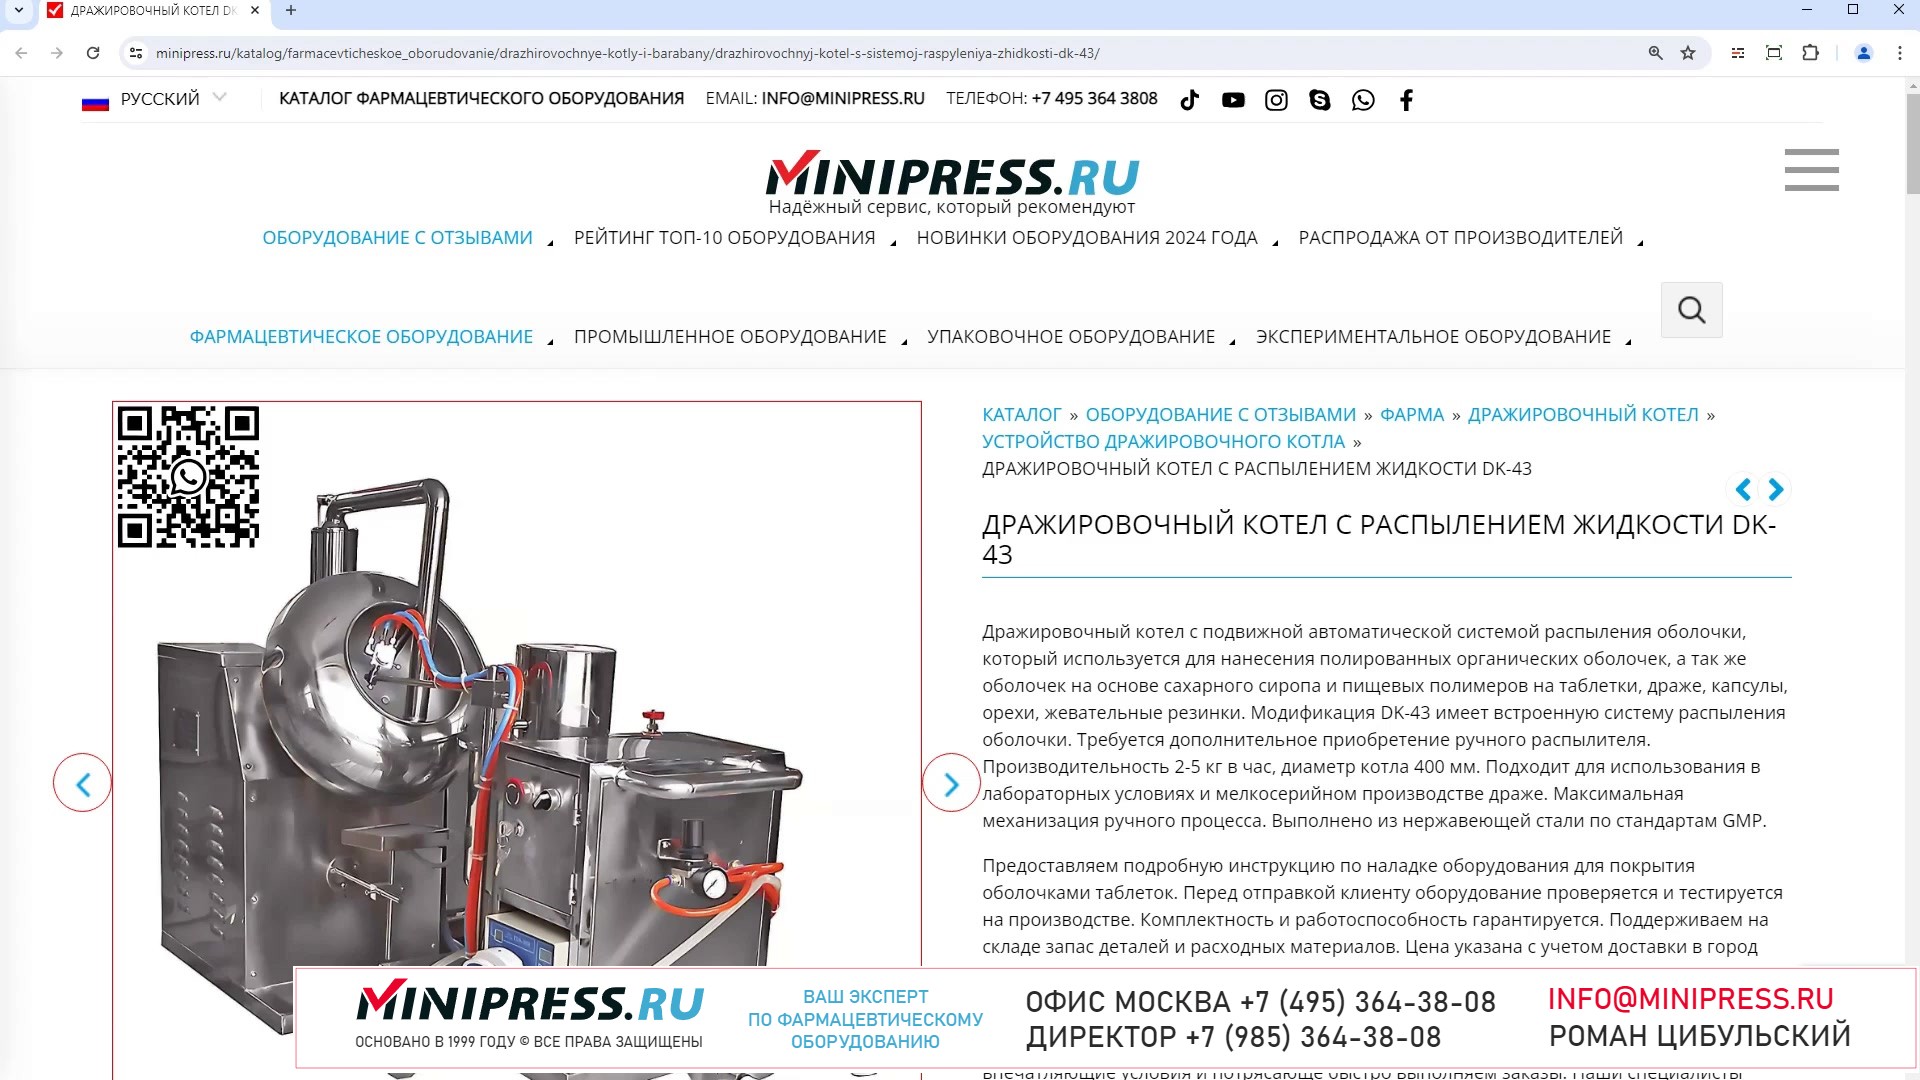 Minipress.ru Дражировочный котел с распылением жидкости DK-43